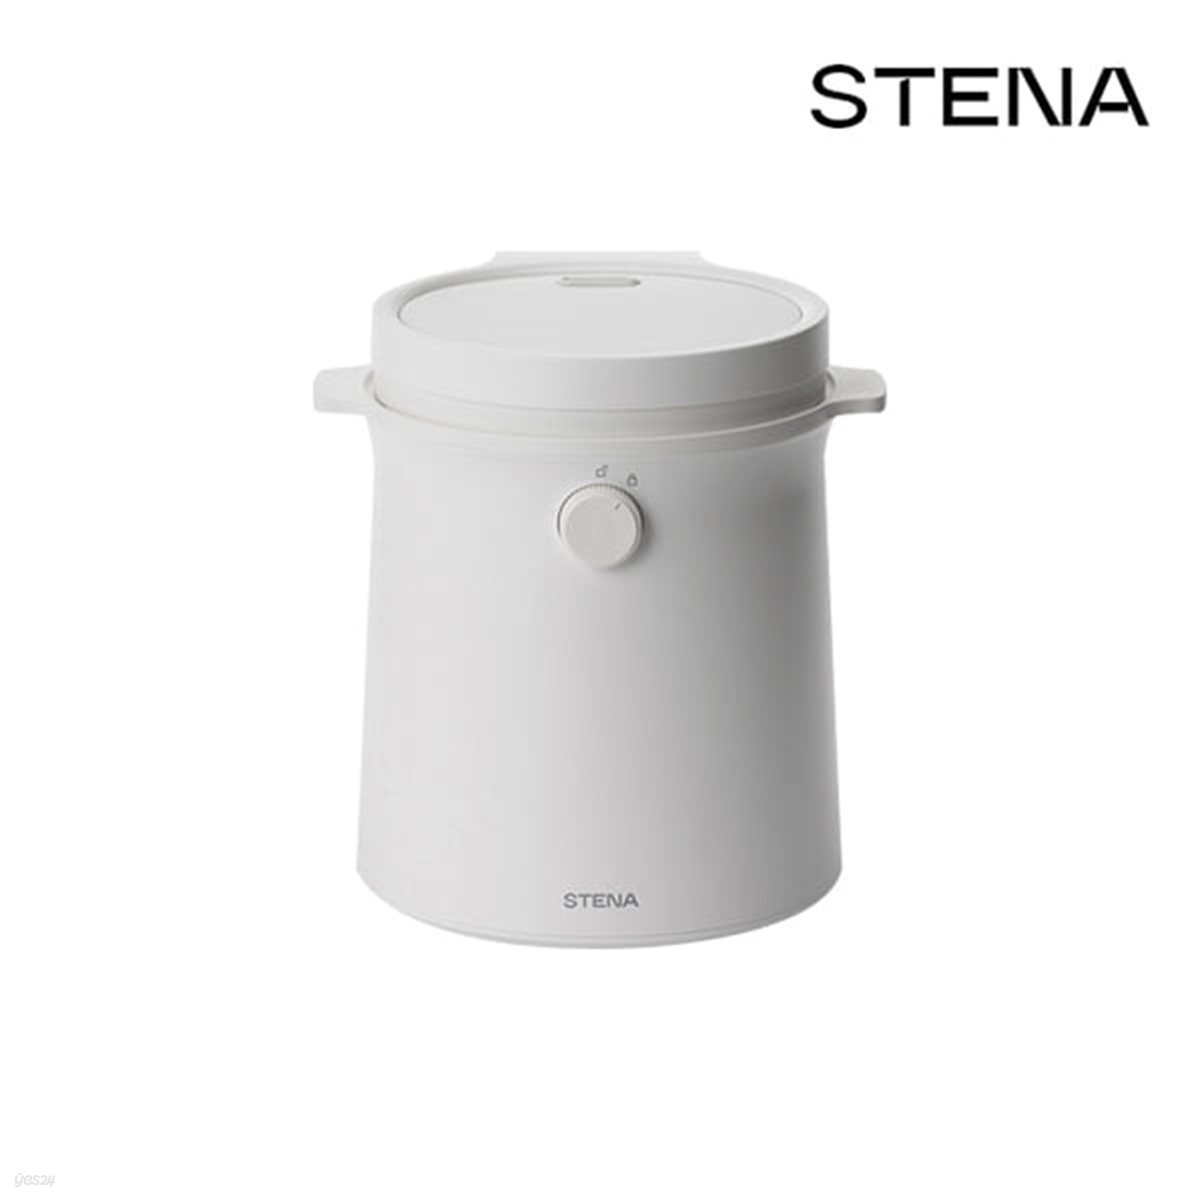 [STENA] 스테나 밀크팟 올스텐 가열식 가습기 (STENA200)/ 3L/ 풀스텐